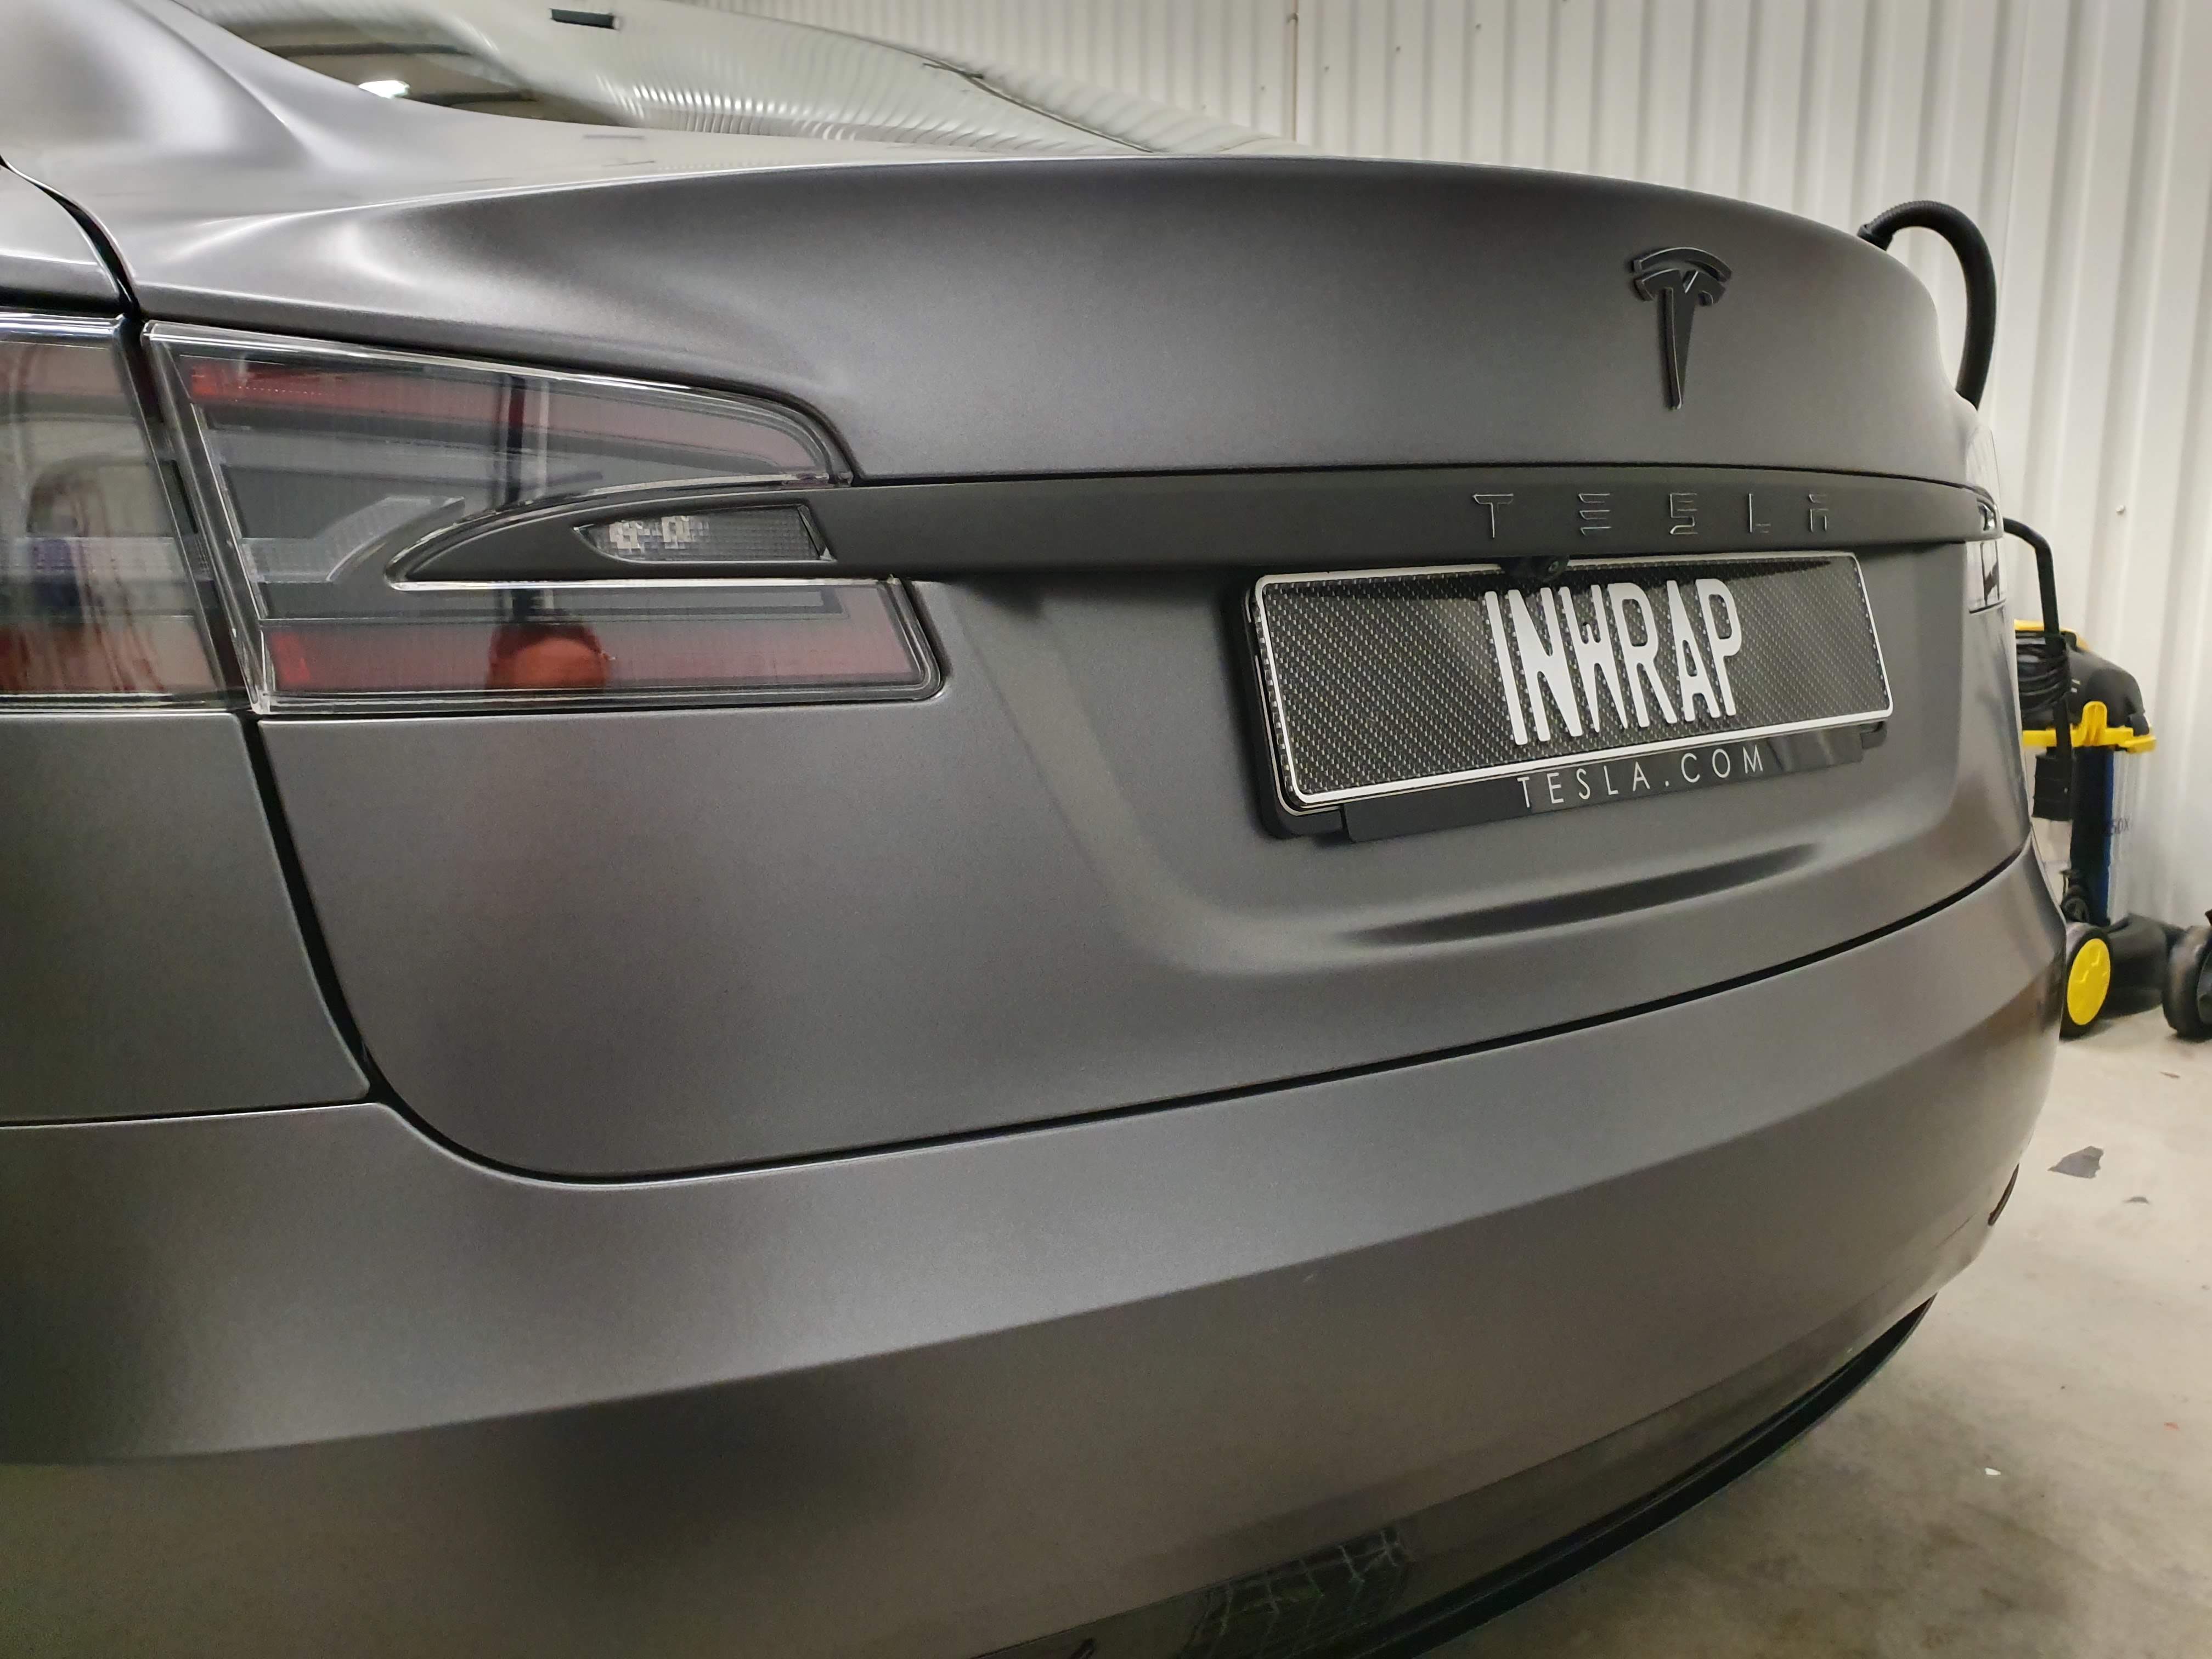 Närbild på bakdelen av helfolierad samt dechromed Model S.